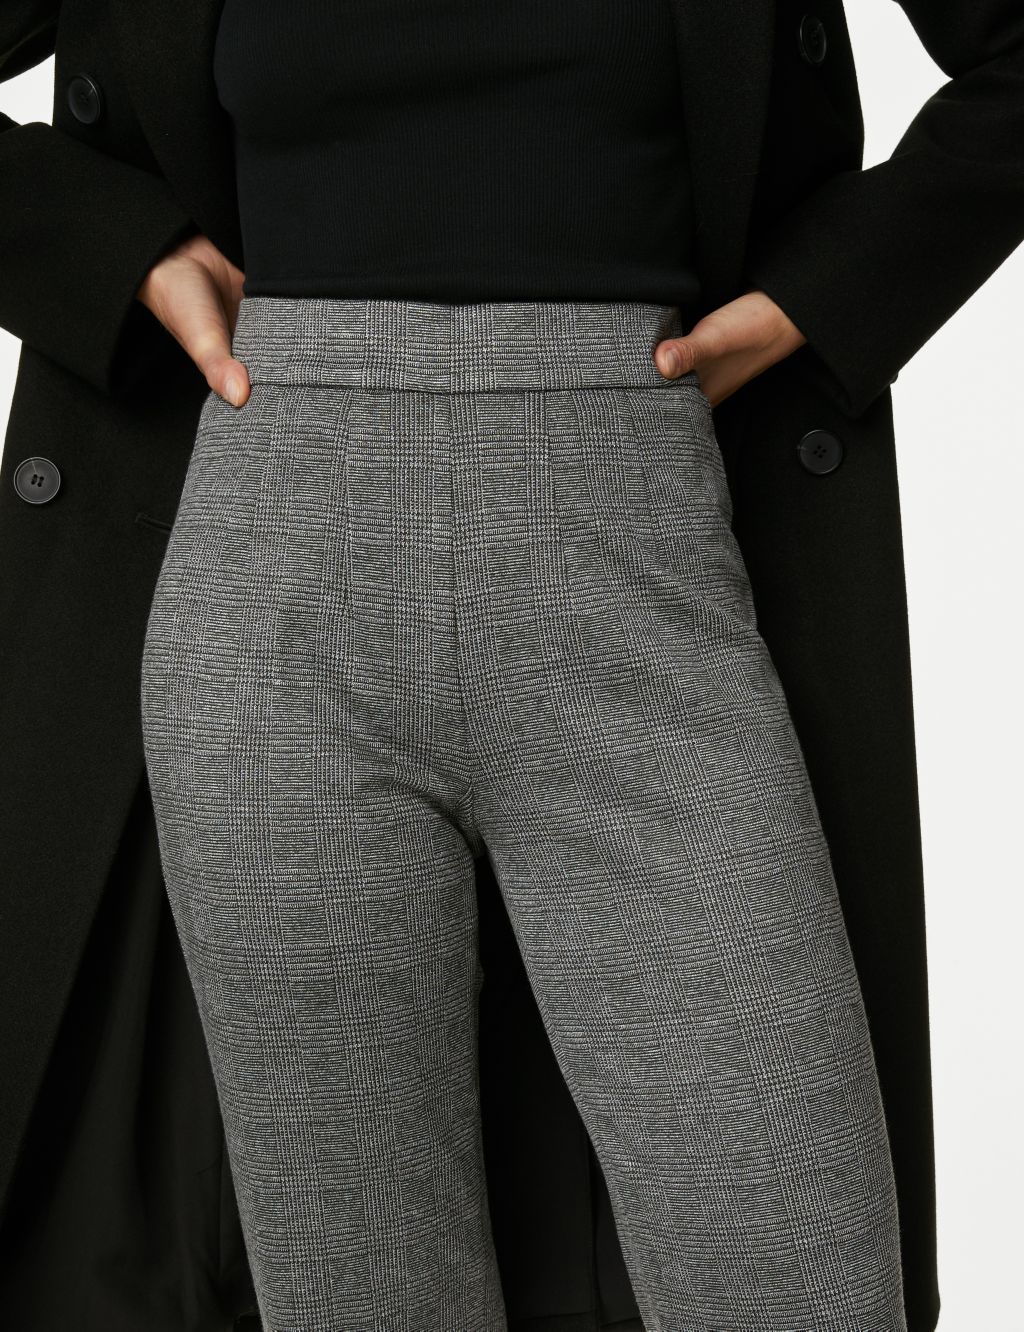 Women's Grey Trousers